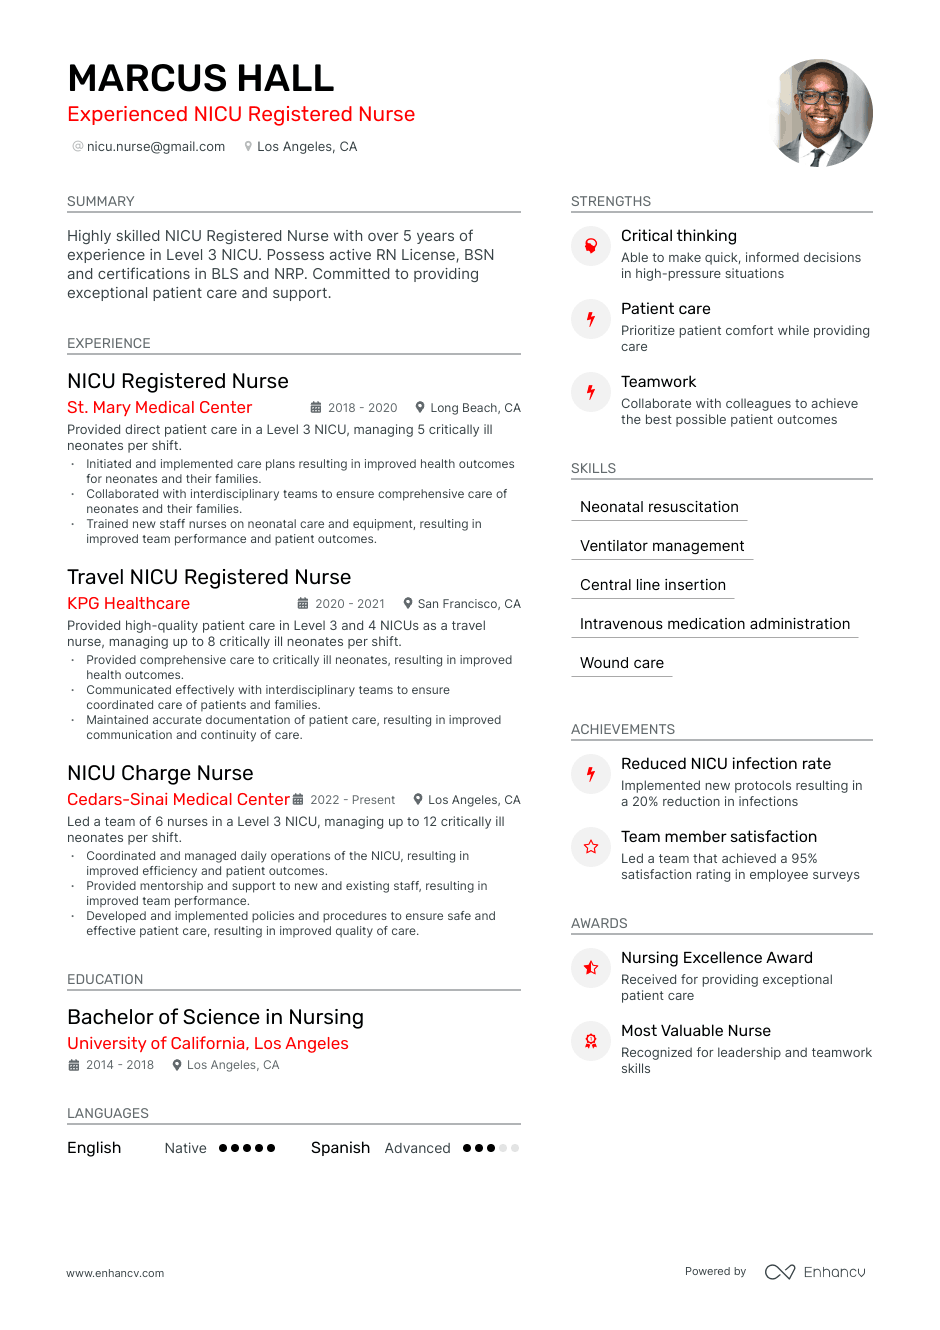 NICU nurse resume example